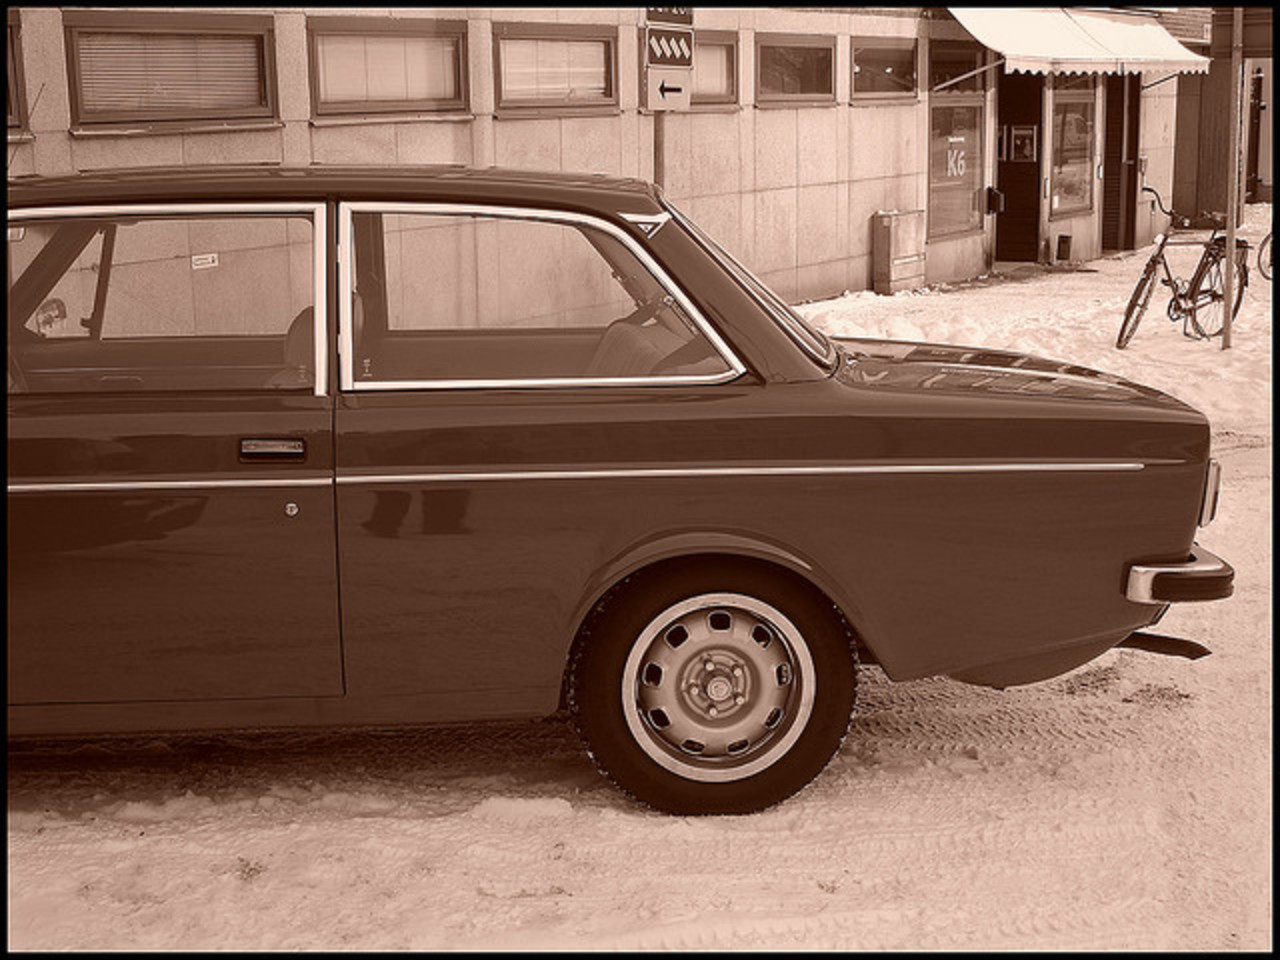 Volvo 142 DL | Flickr - Photo Sharing!